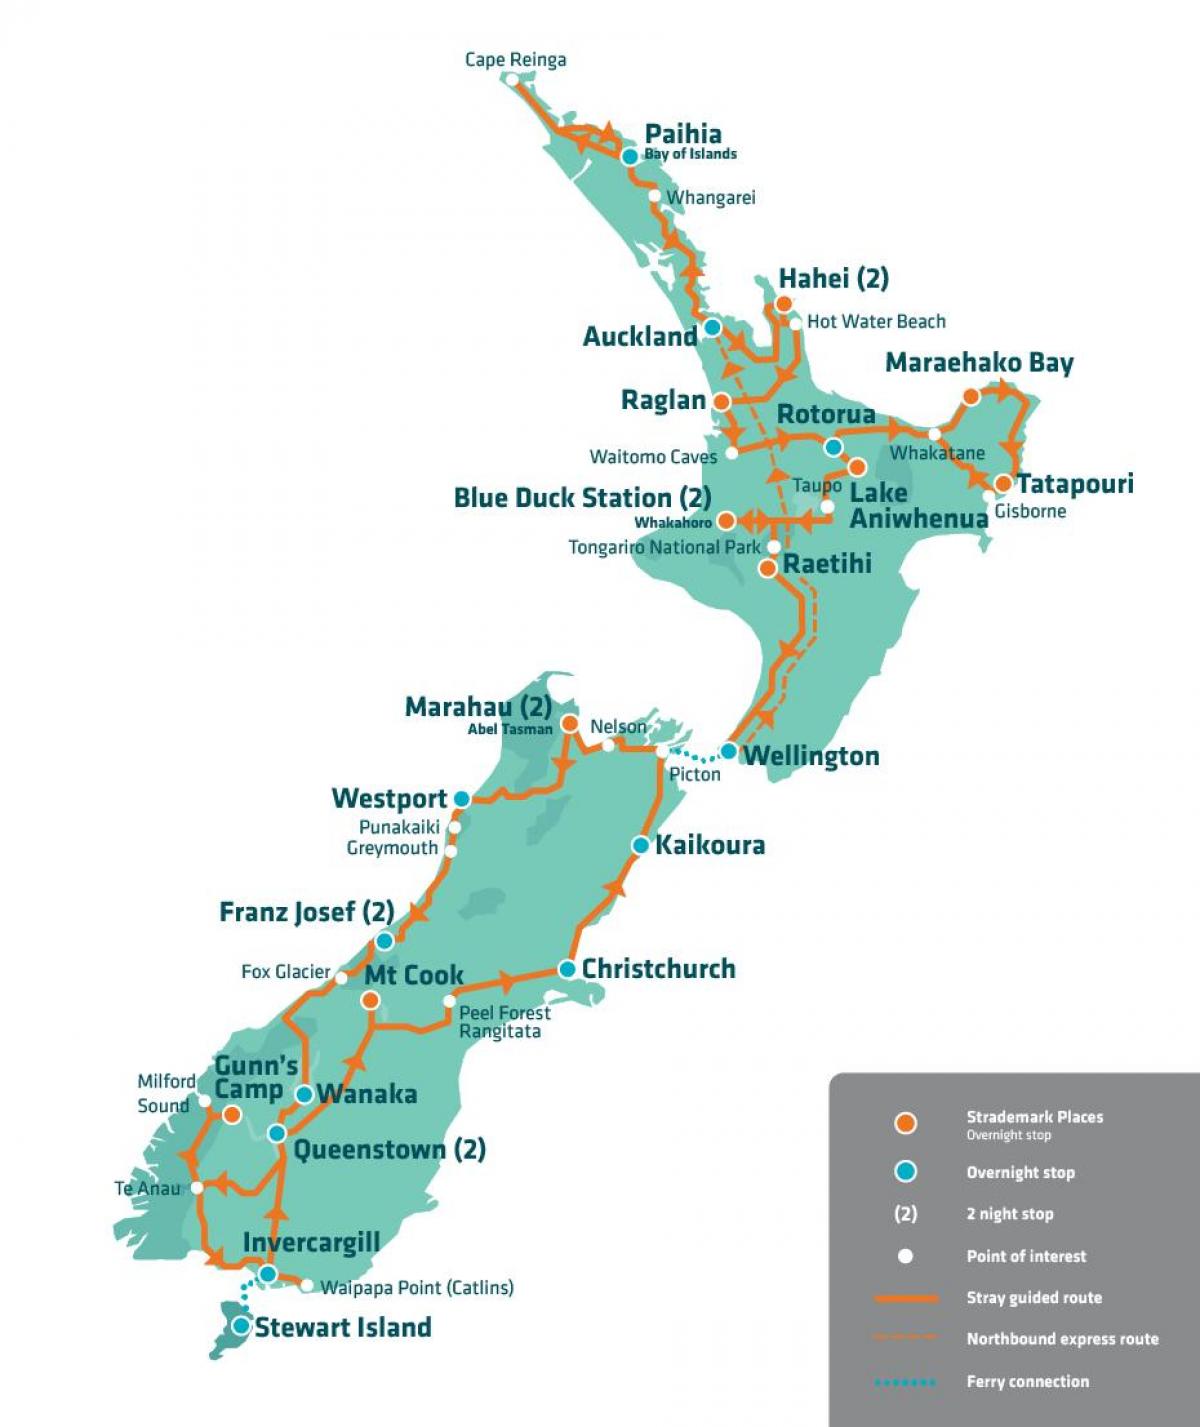 Նոր Զելանդիա տեսարժան վայրերը քարտեզի վրա